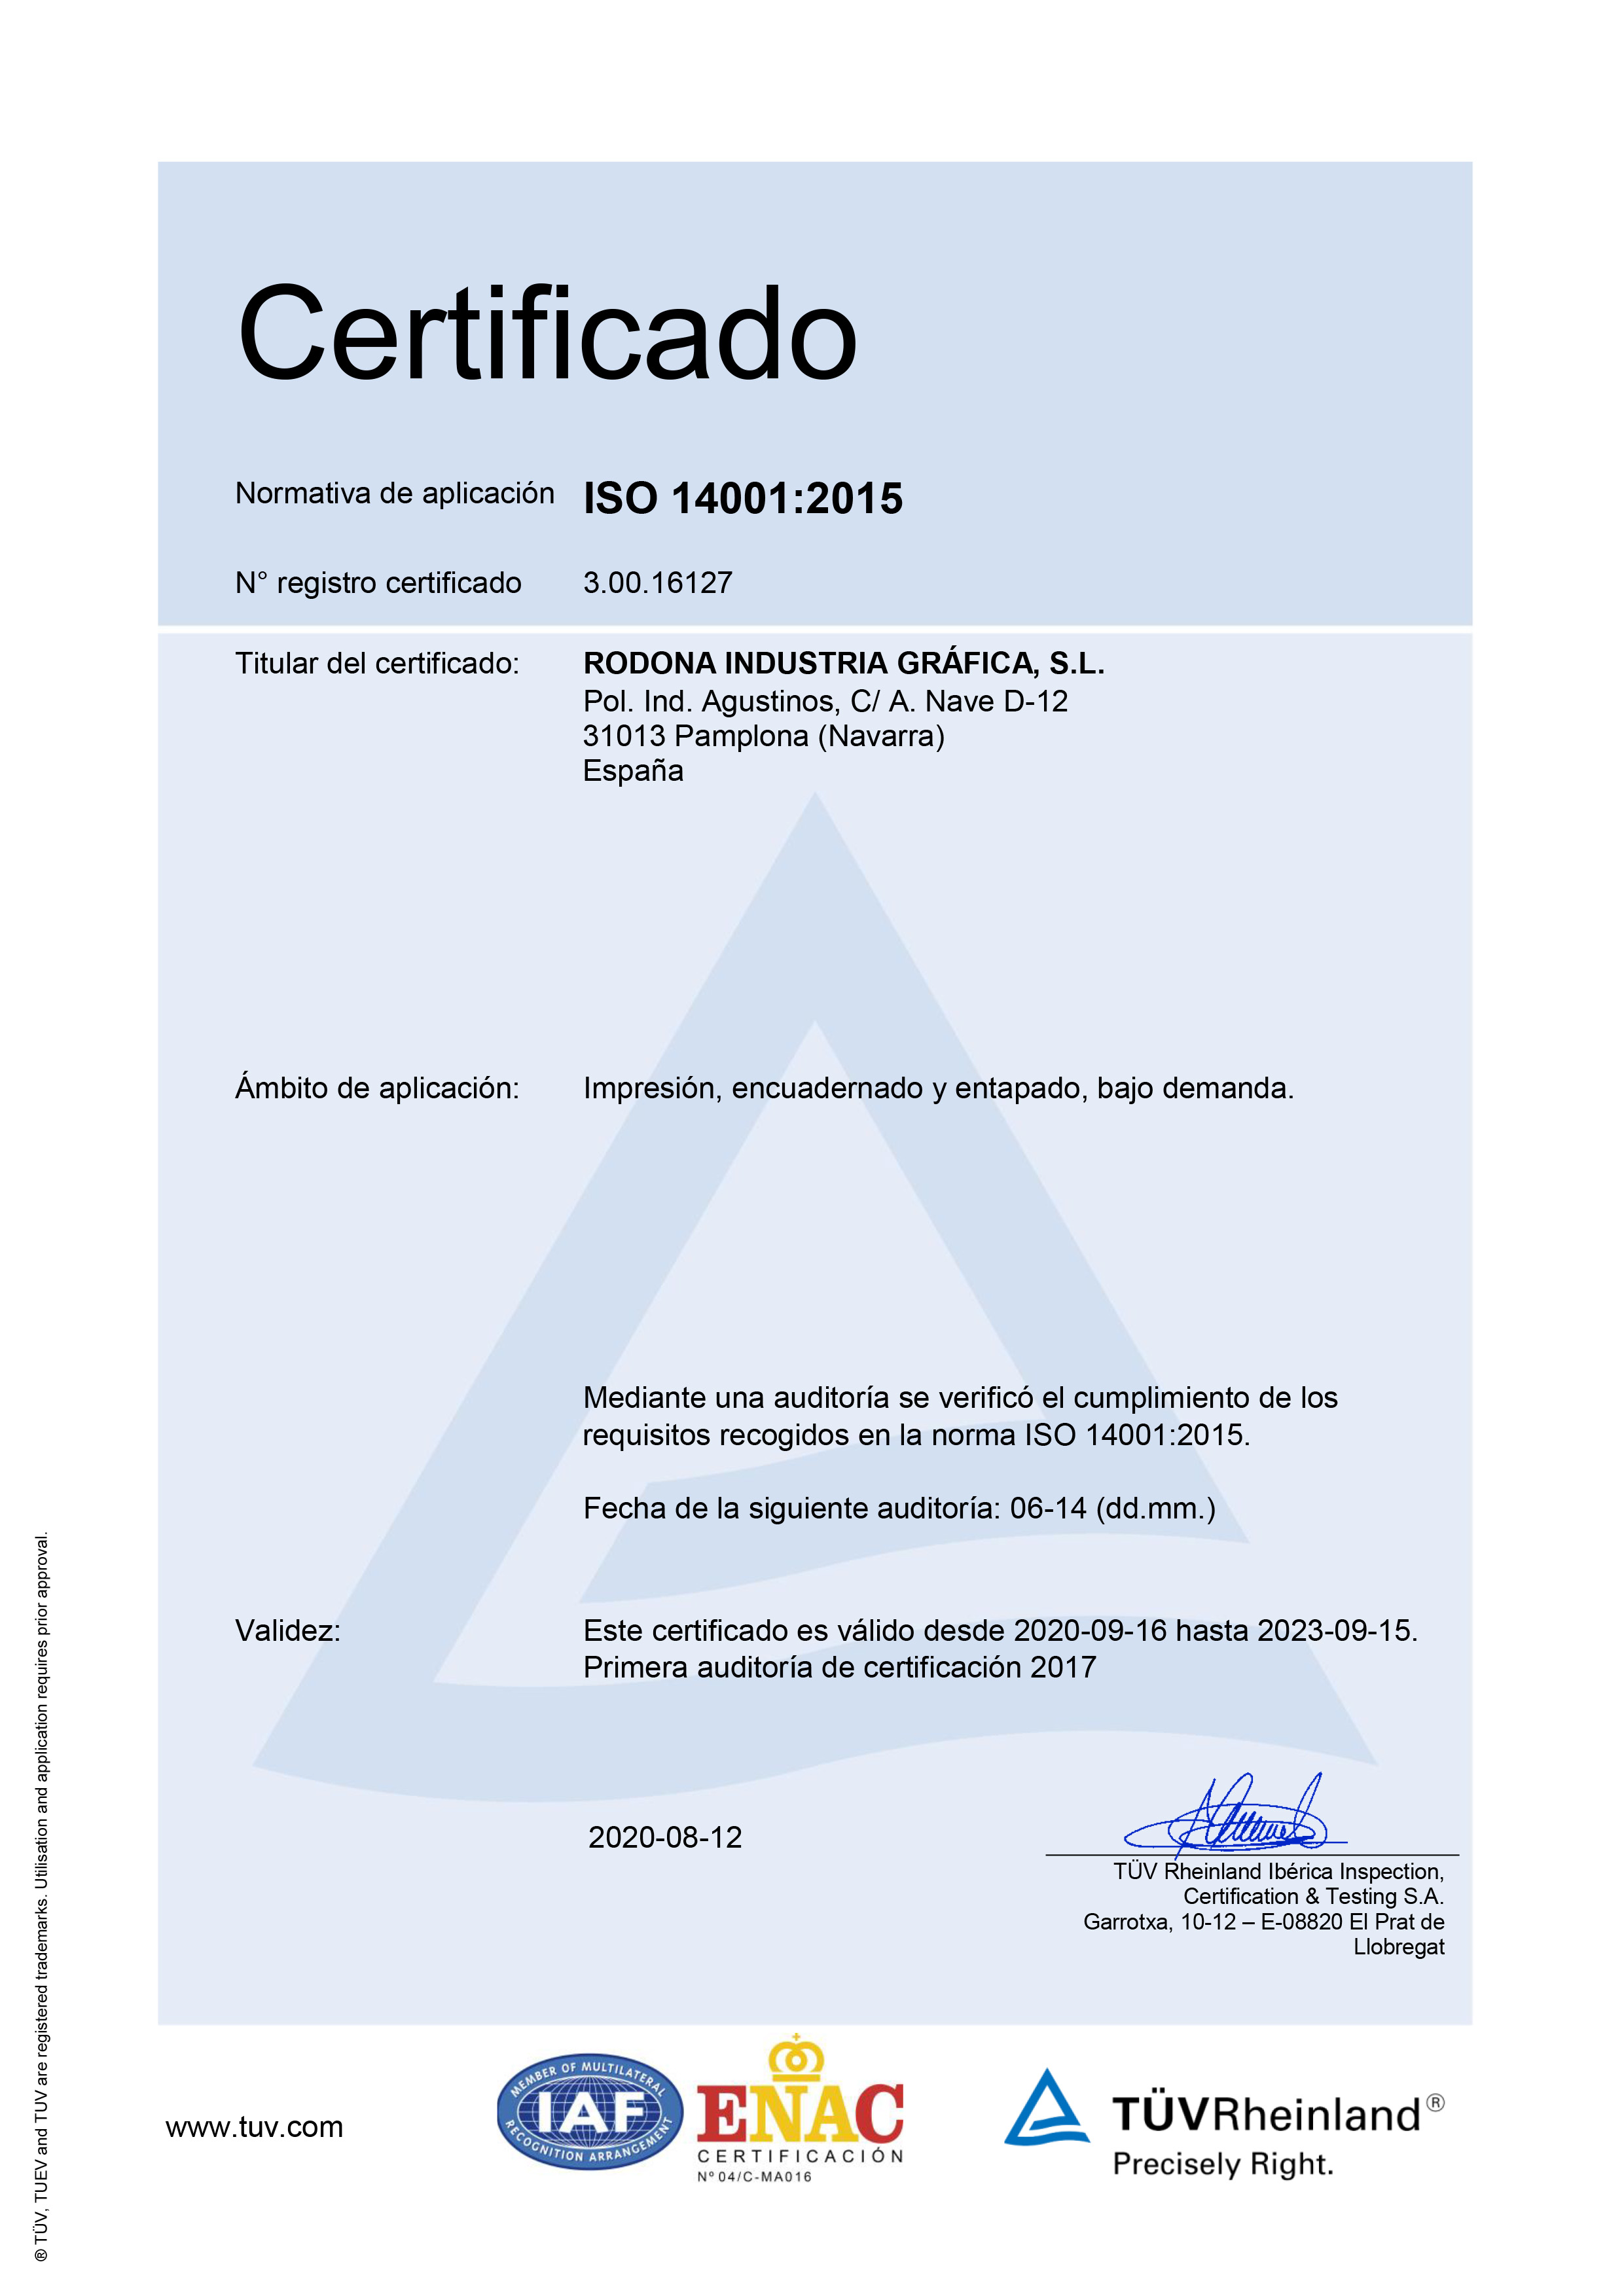 Teleférico centavo sátira Certificados de calidad - Rodona